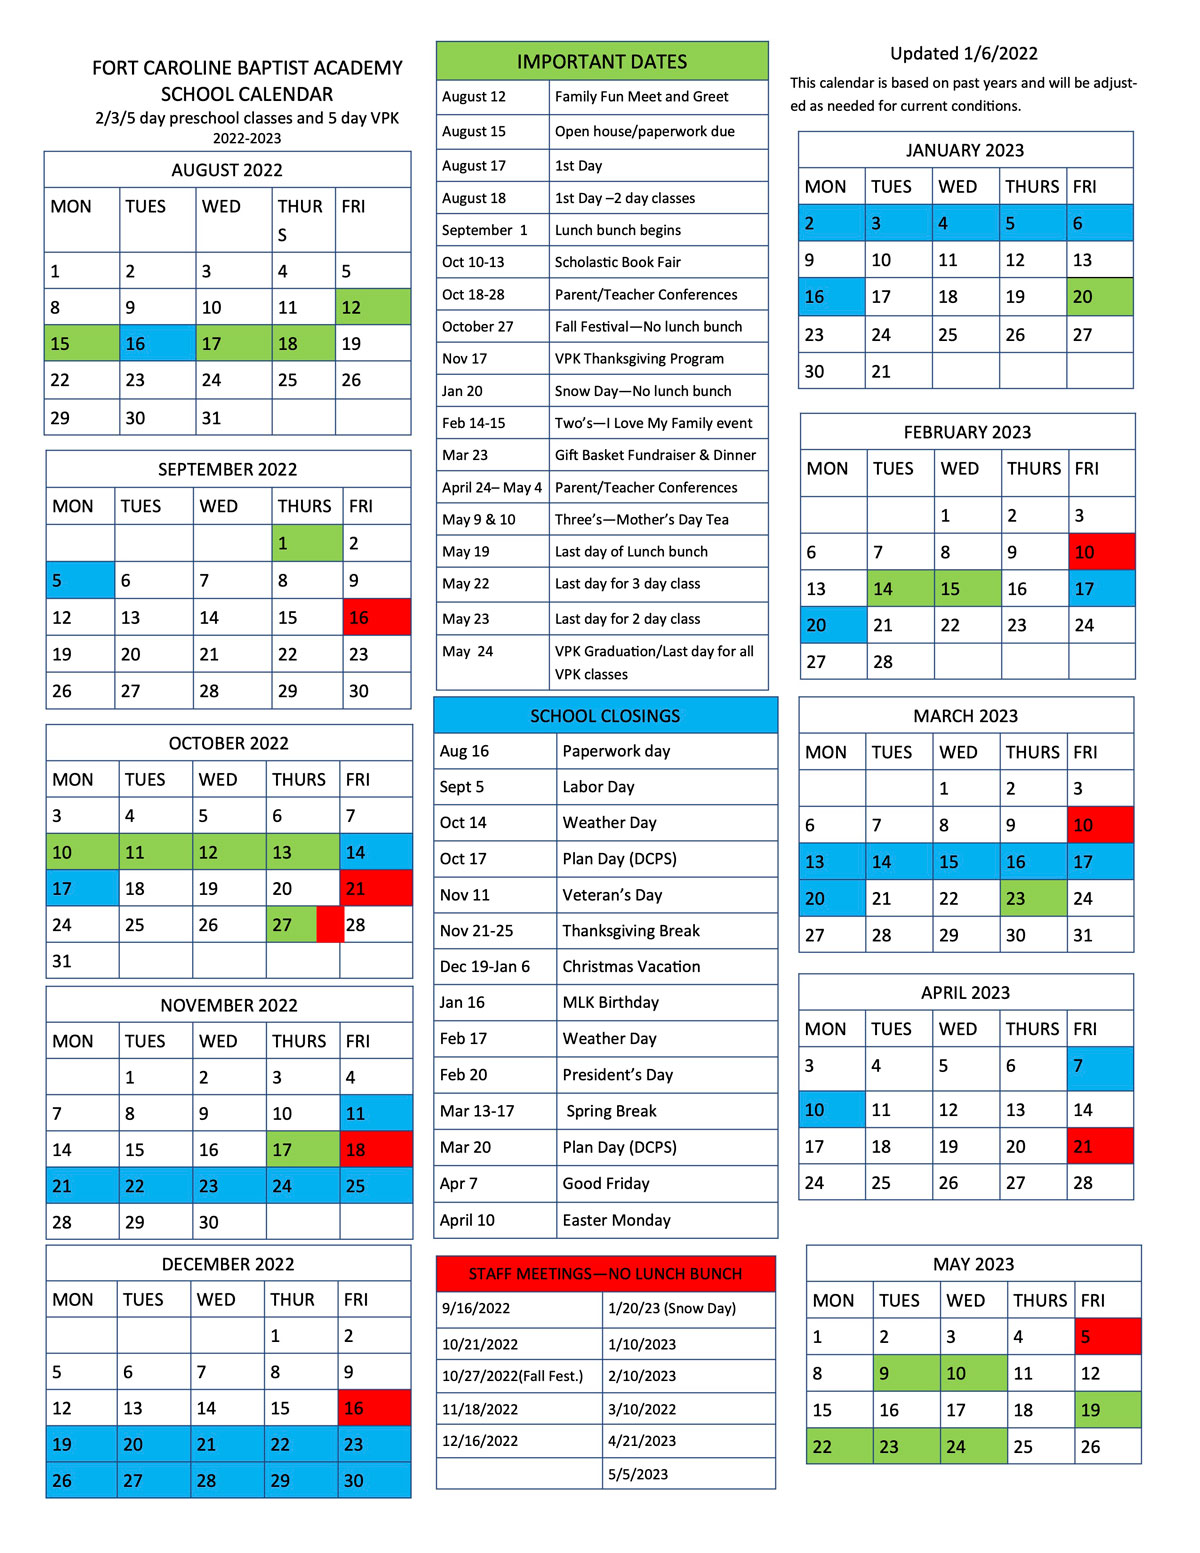 FCBA Jax Calendar 2022-23